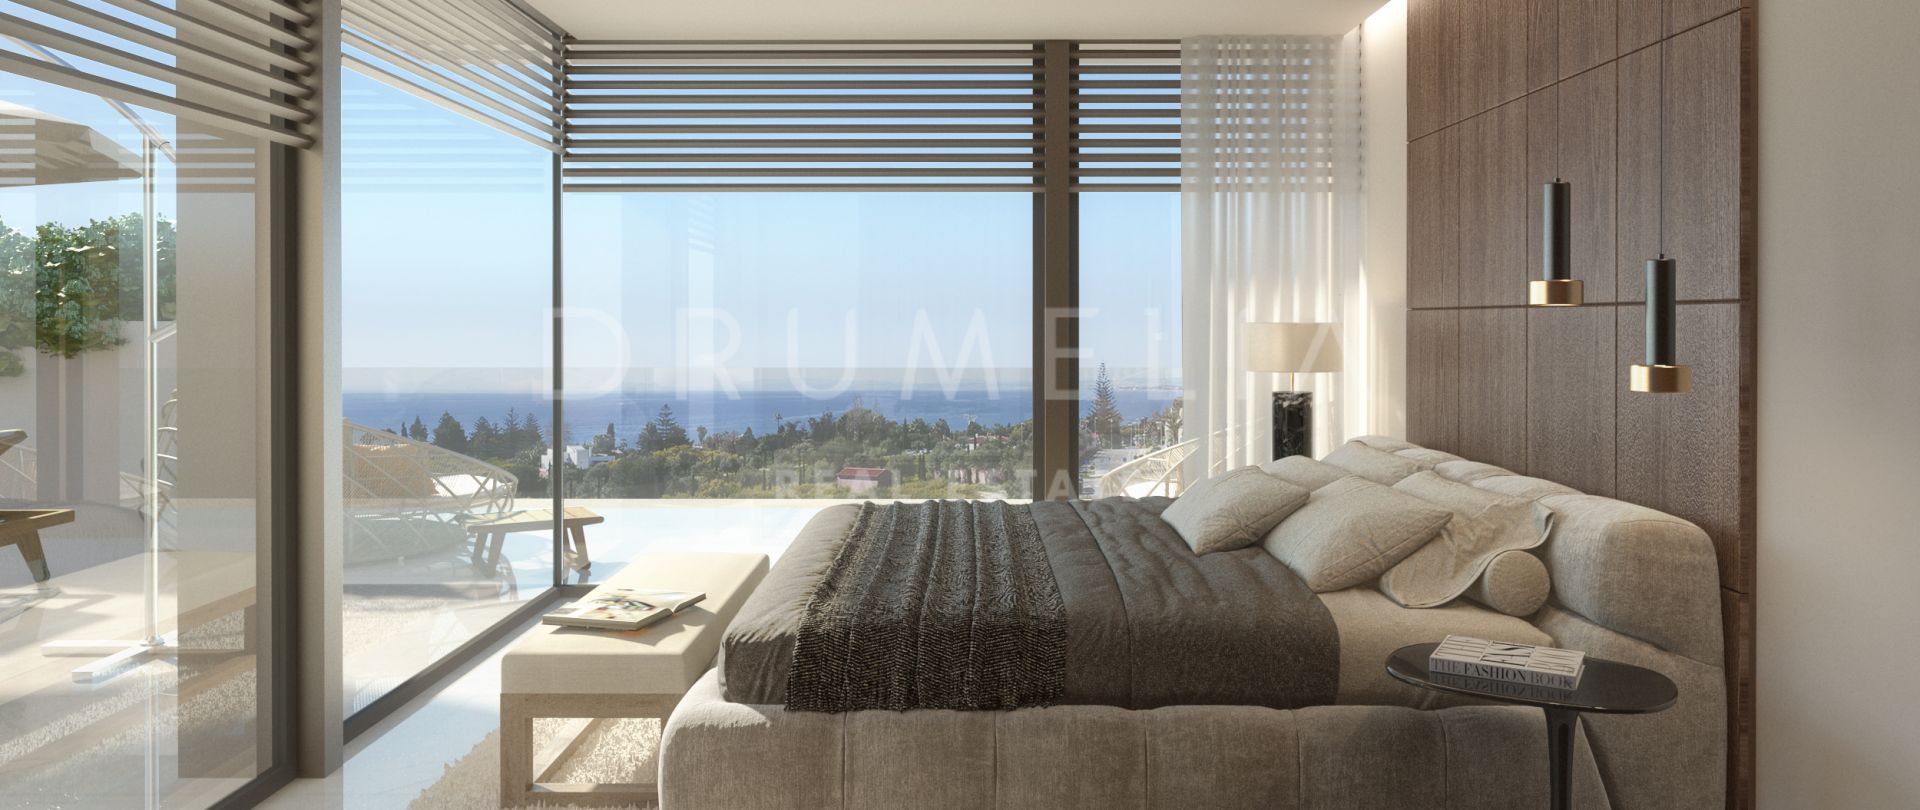 Hervorragende neue moderne Luxus-Duplex im exklusiven Rio Real Golf, Marbella Ost